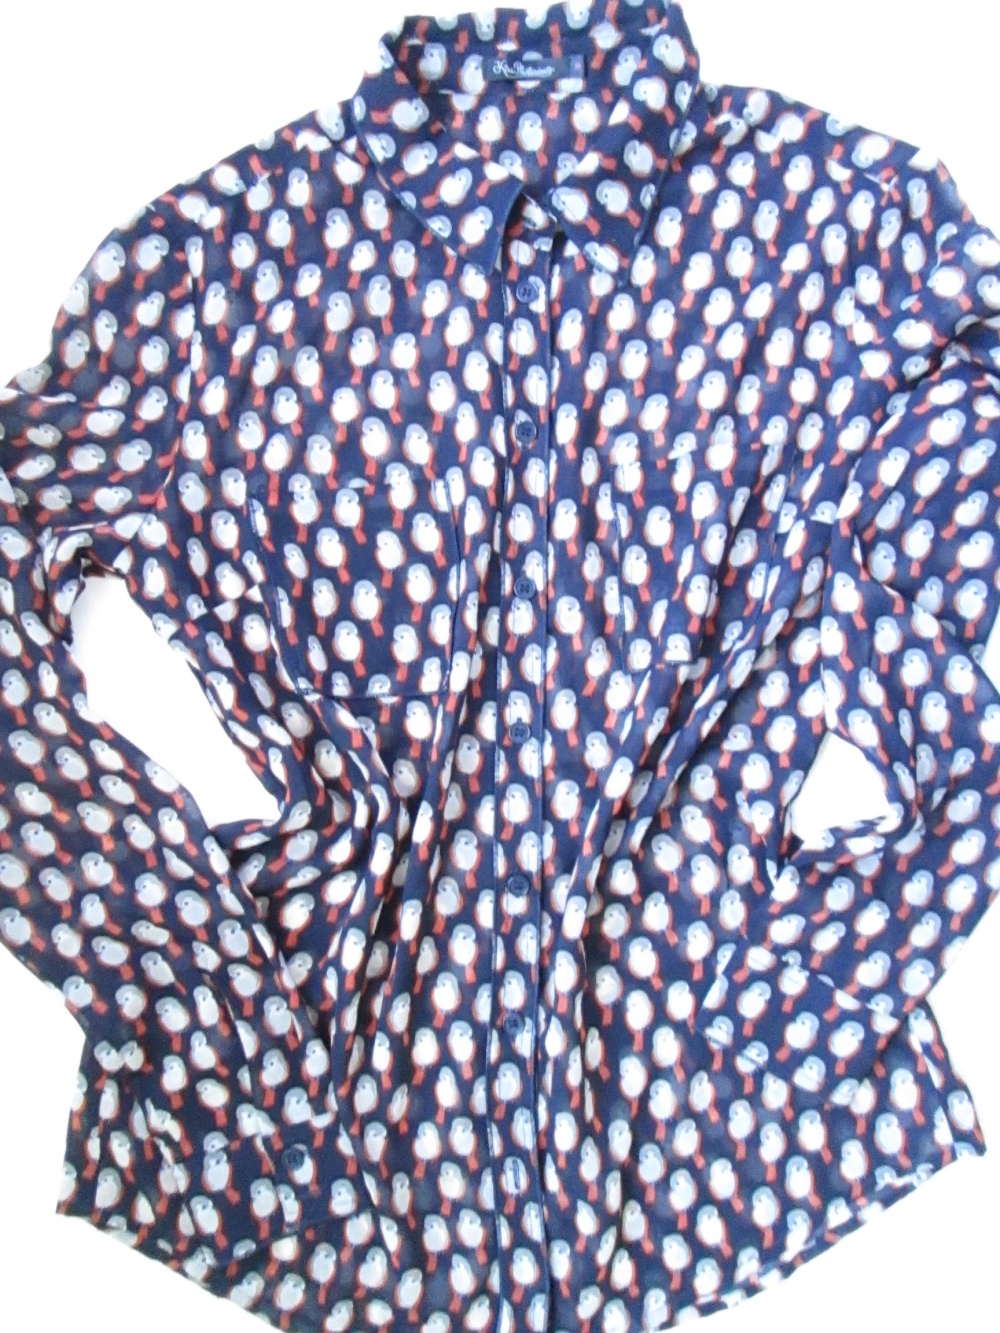 Сет блузка   Кira Plastinina + брюки Steilman р. 42 ~44